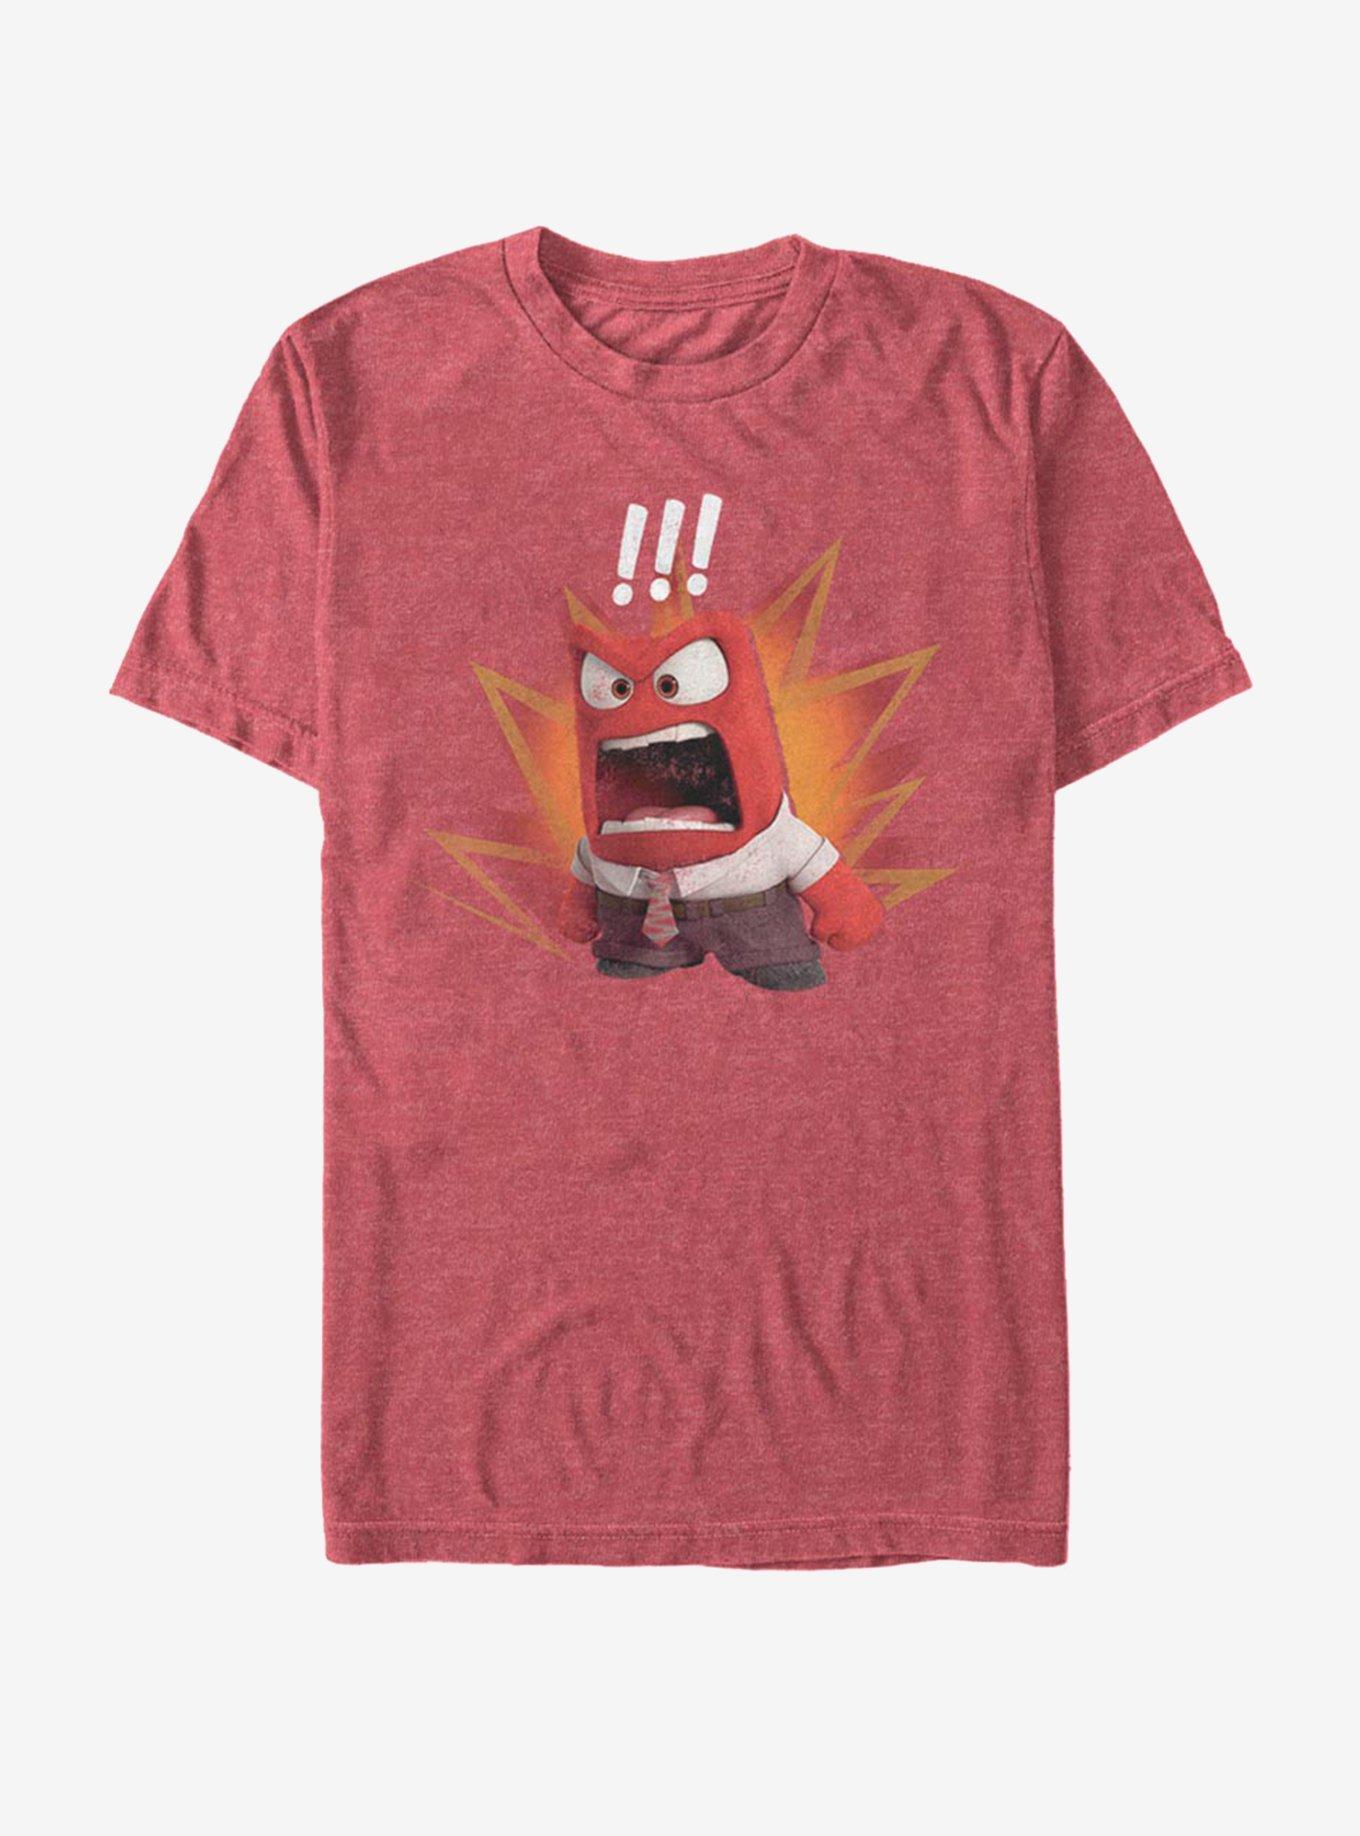 Disney Pixar Inside Out Curse Word T-Shirt, RED HTR, hi-res